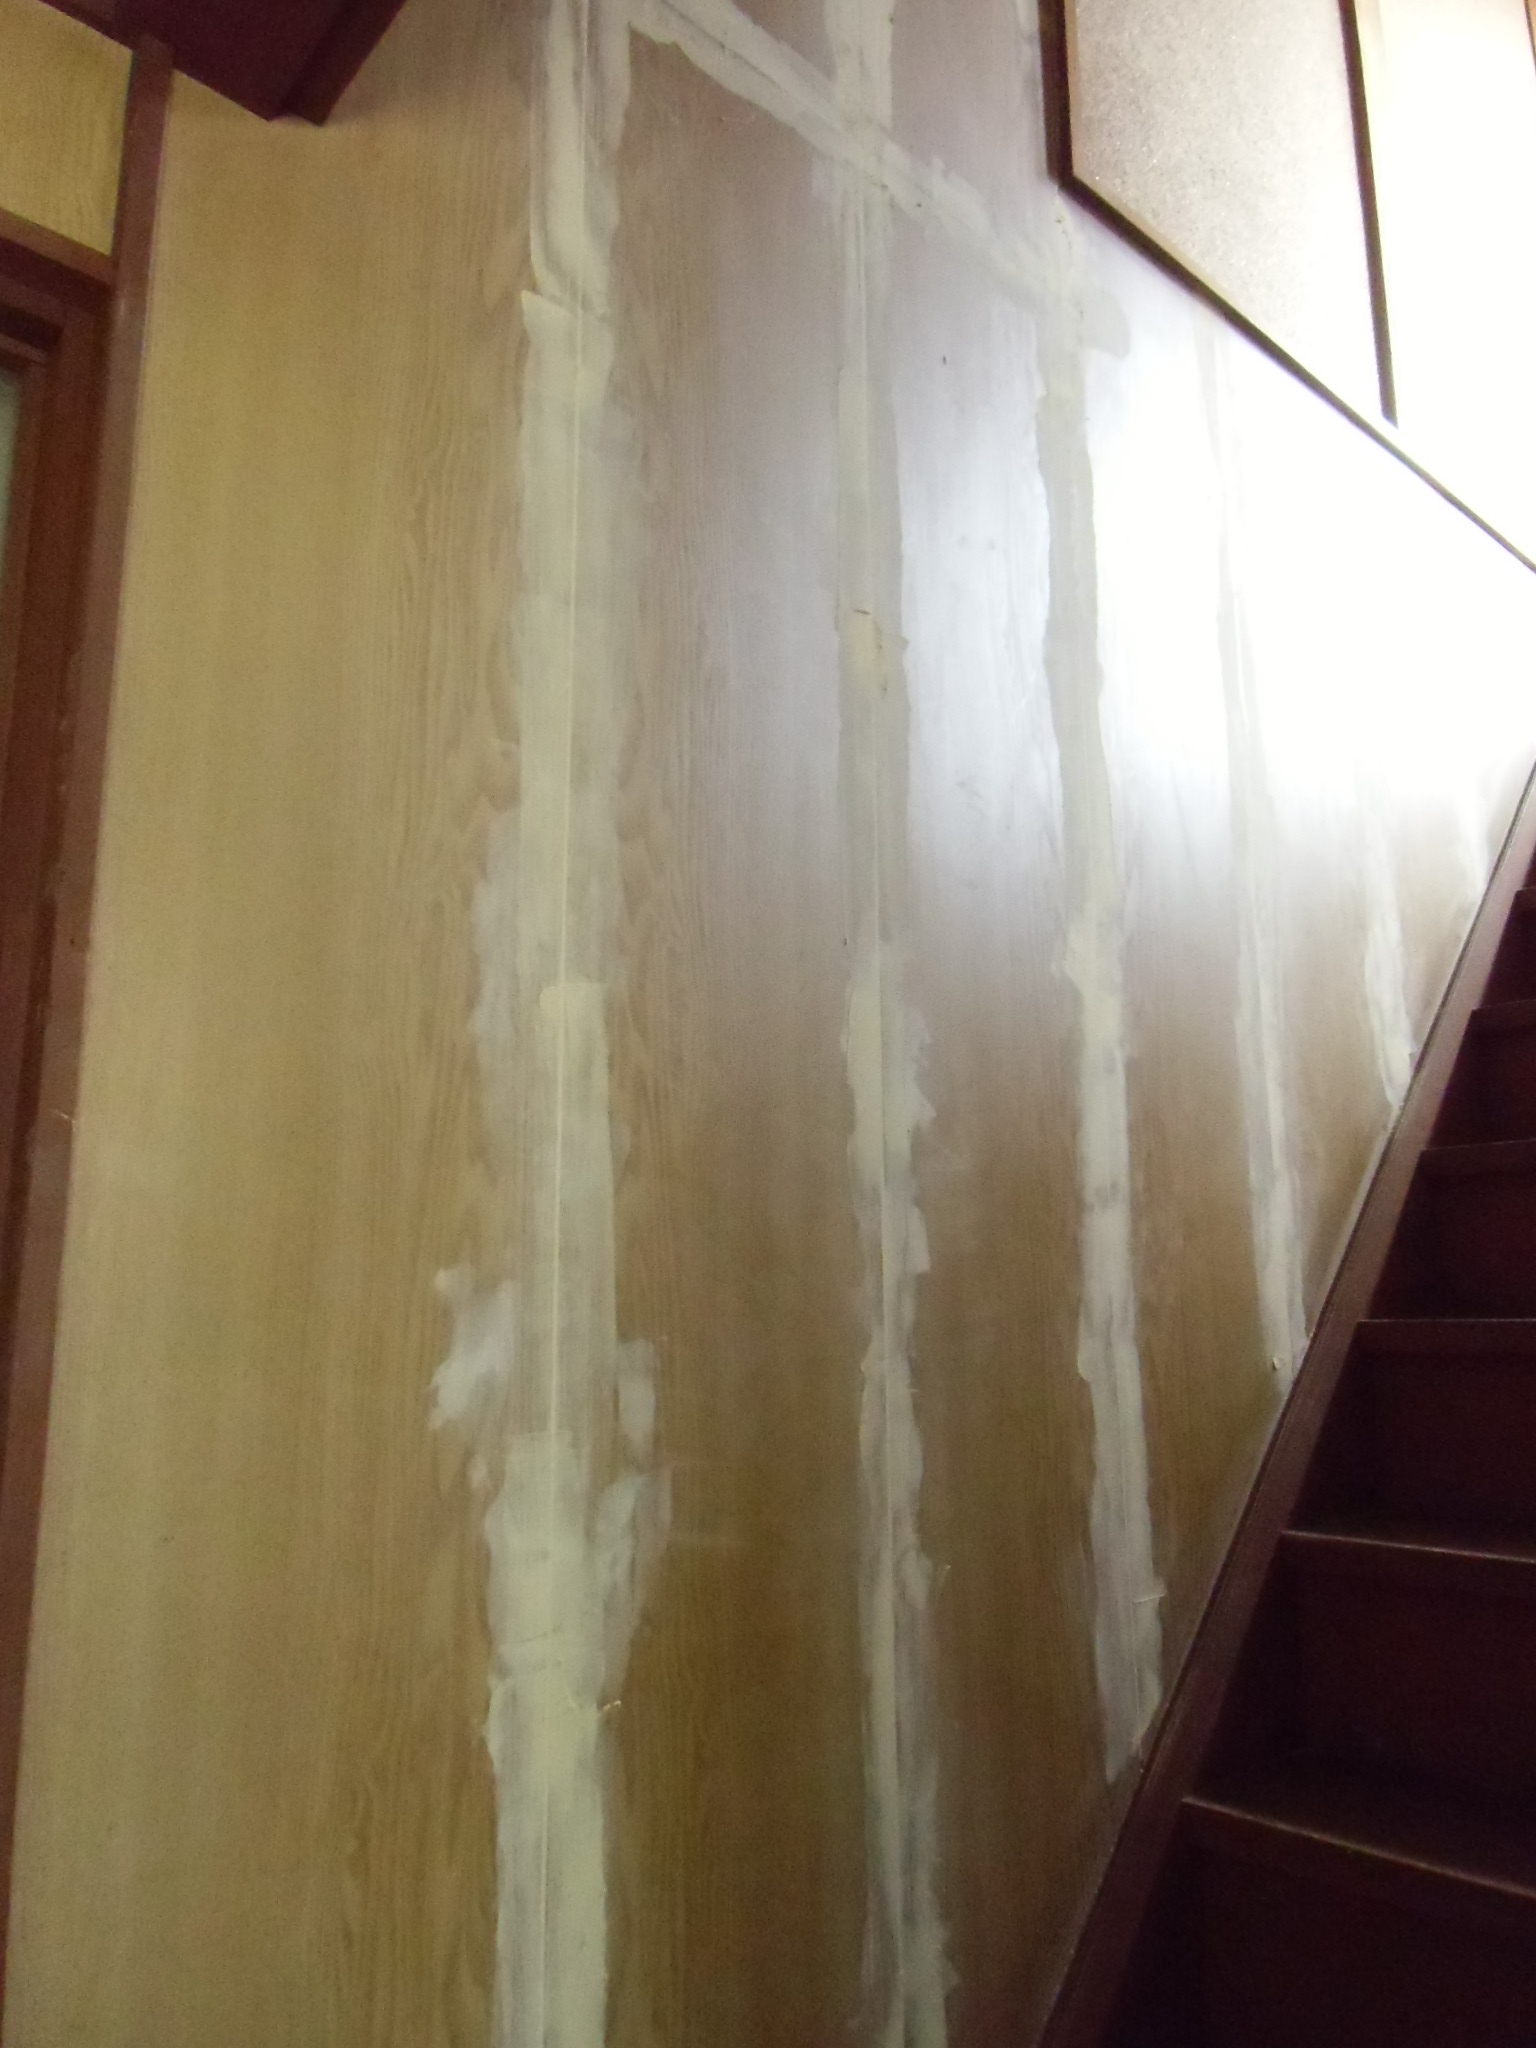 Diyで階段の壁紙の貼り方 1 階段のクロス 合板にパテで下地を作る